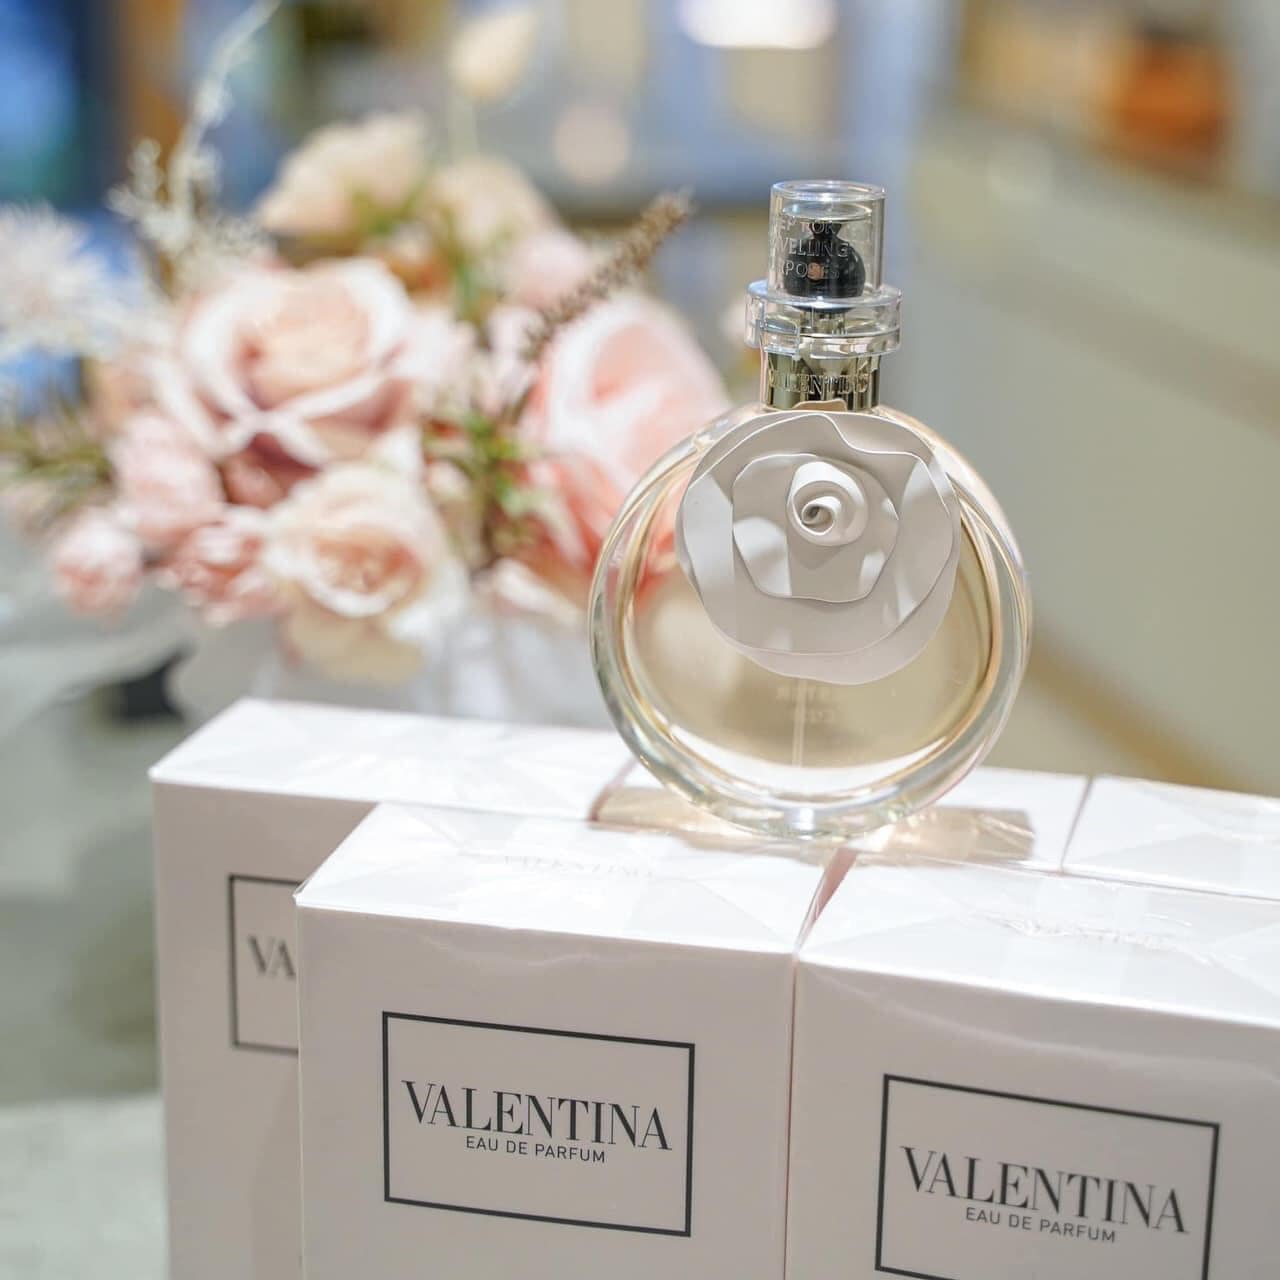 Valentino Valentina Eau de Parfum 4 - Nuochoarosa.com - Nước hoa cao cấp, chính hãng giá tốt, mẫu mới